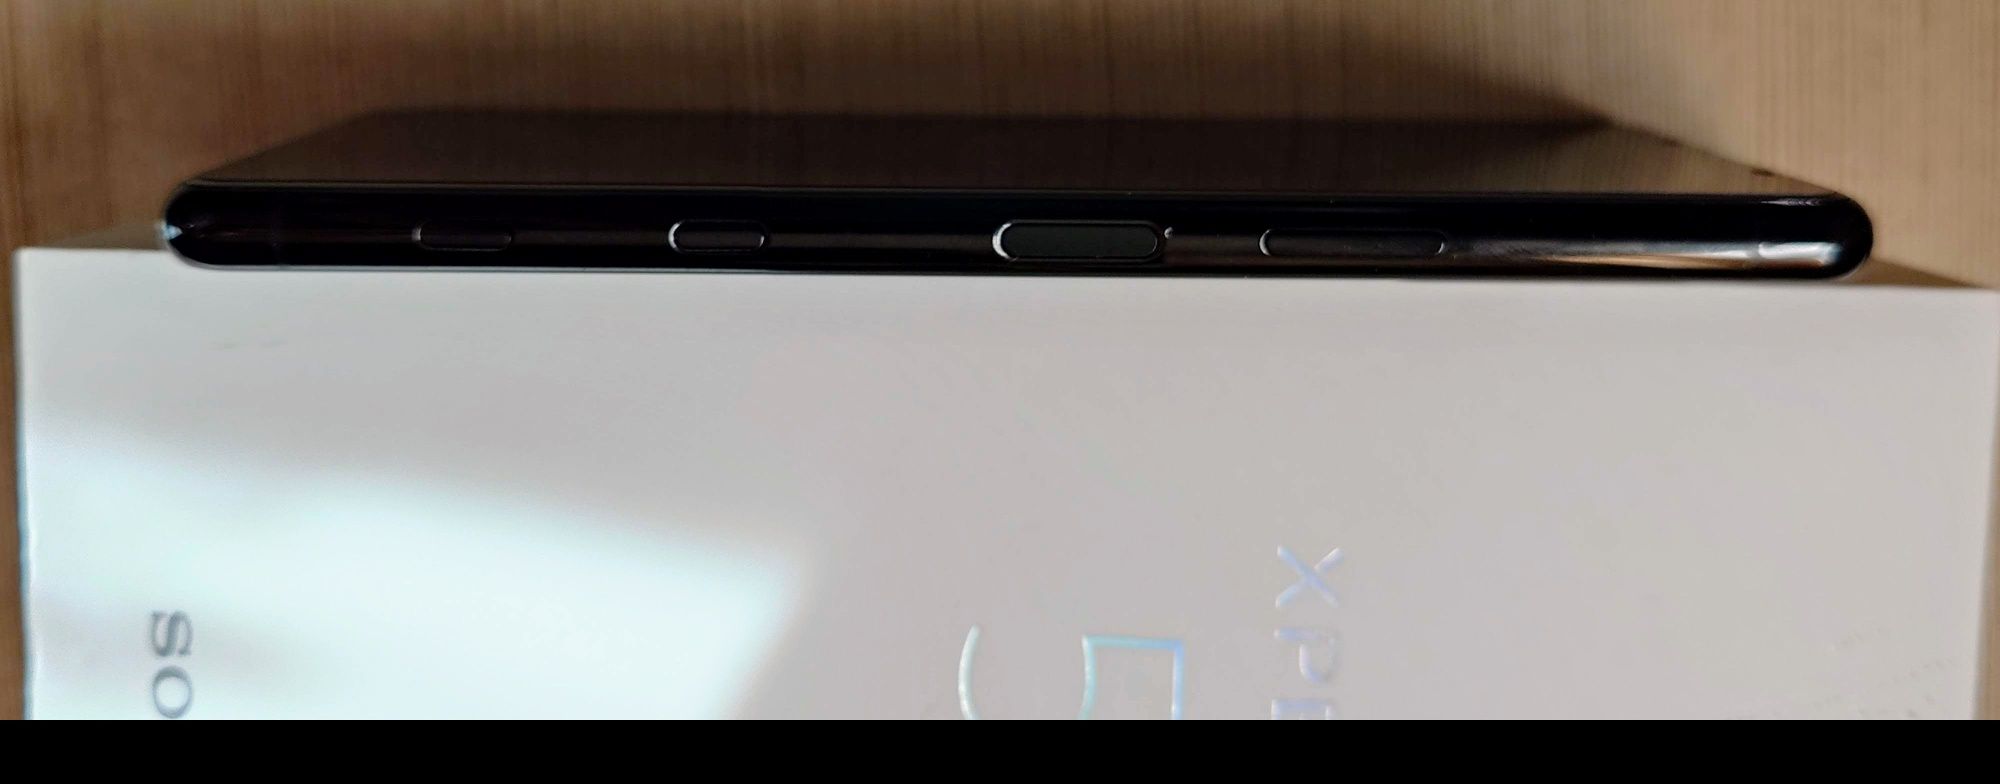 Sony Xperia 5 II 128GB XQ-AS52 DUAL SIM, folia na ekranie i aparacie